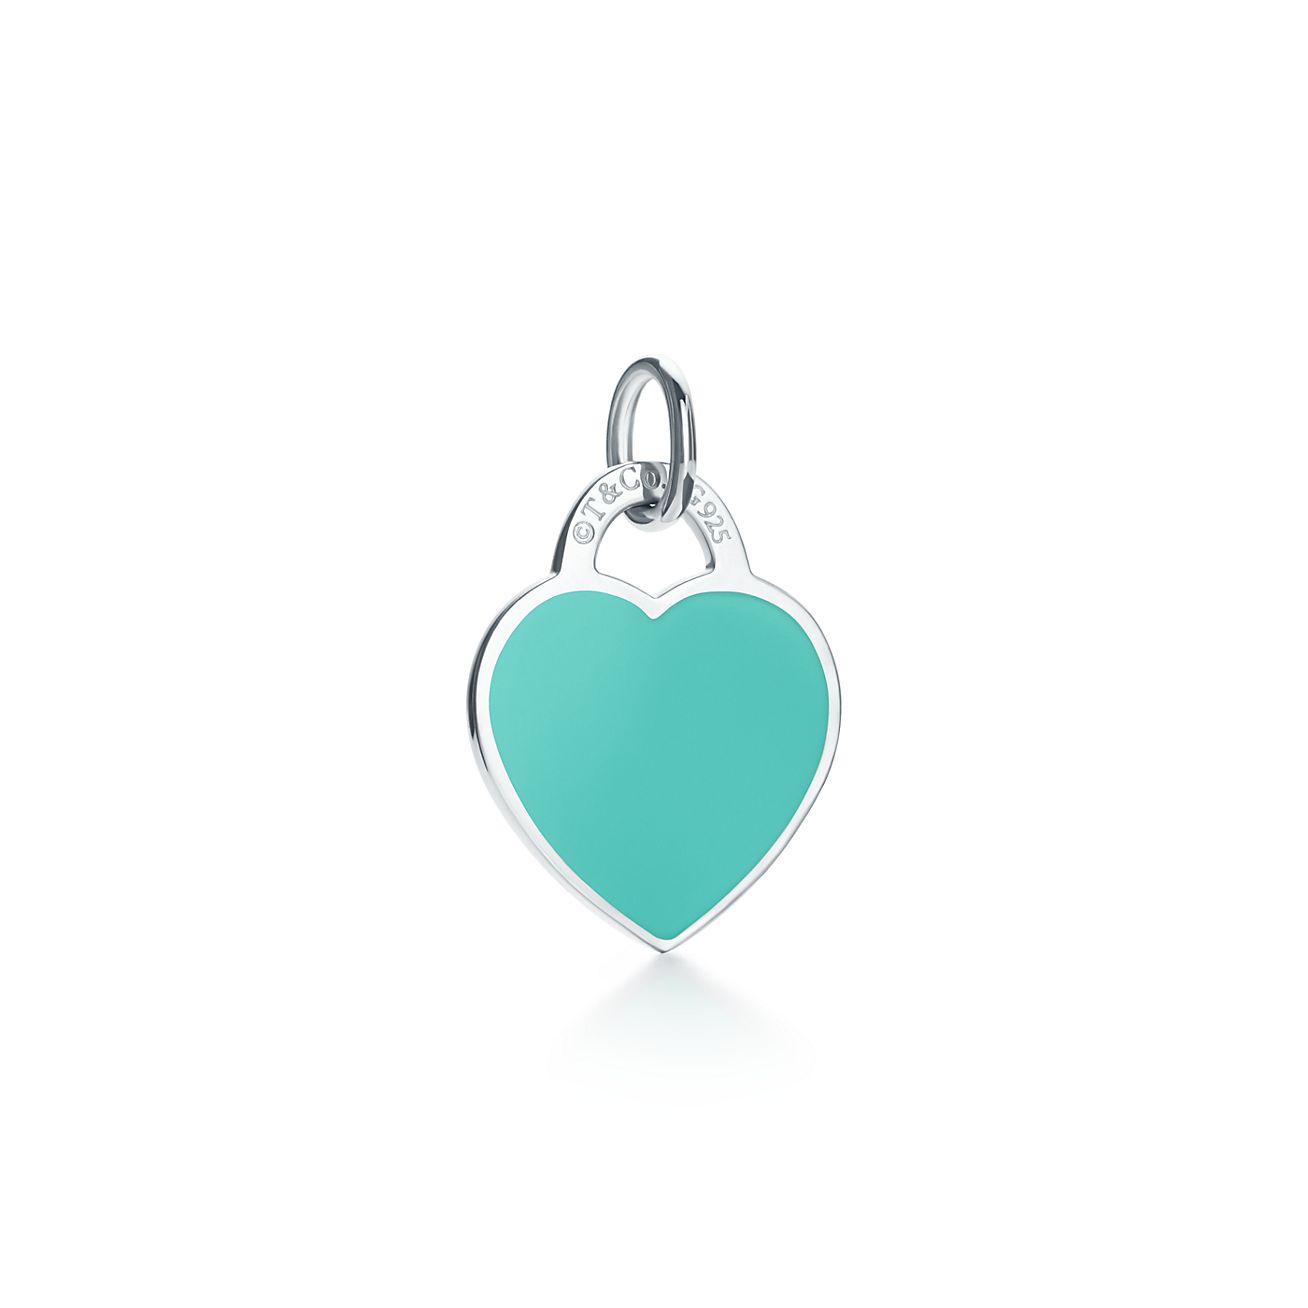 tiffany's blue heart necklace